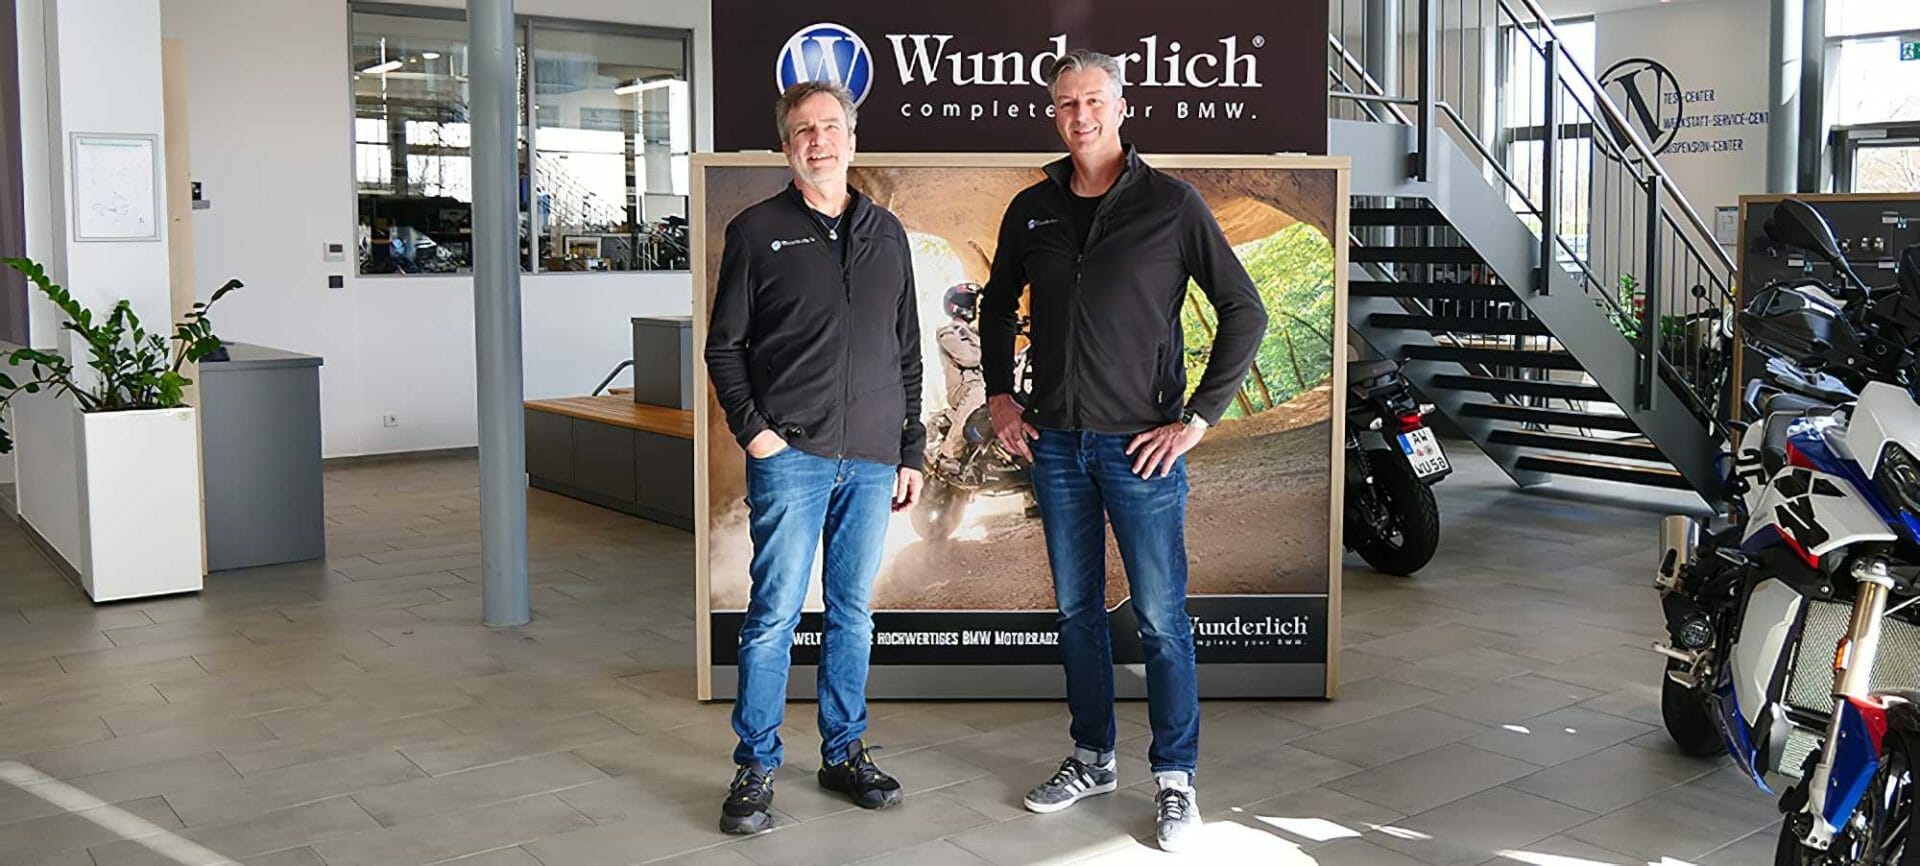 Herbert Schwarz - Brand Manager & Markenbotschafter bei Wunderlich
- auch in der MOTORRAD NACHRICHTEN APP